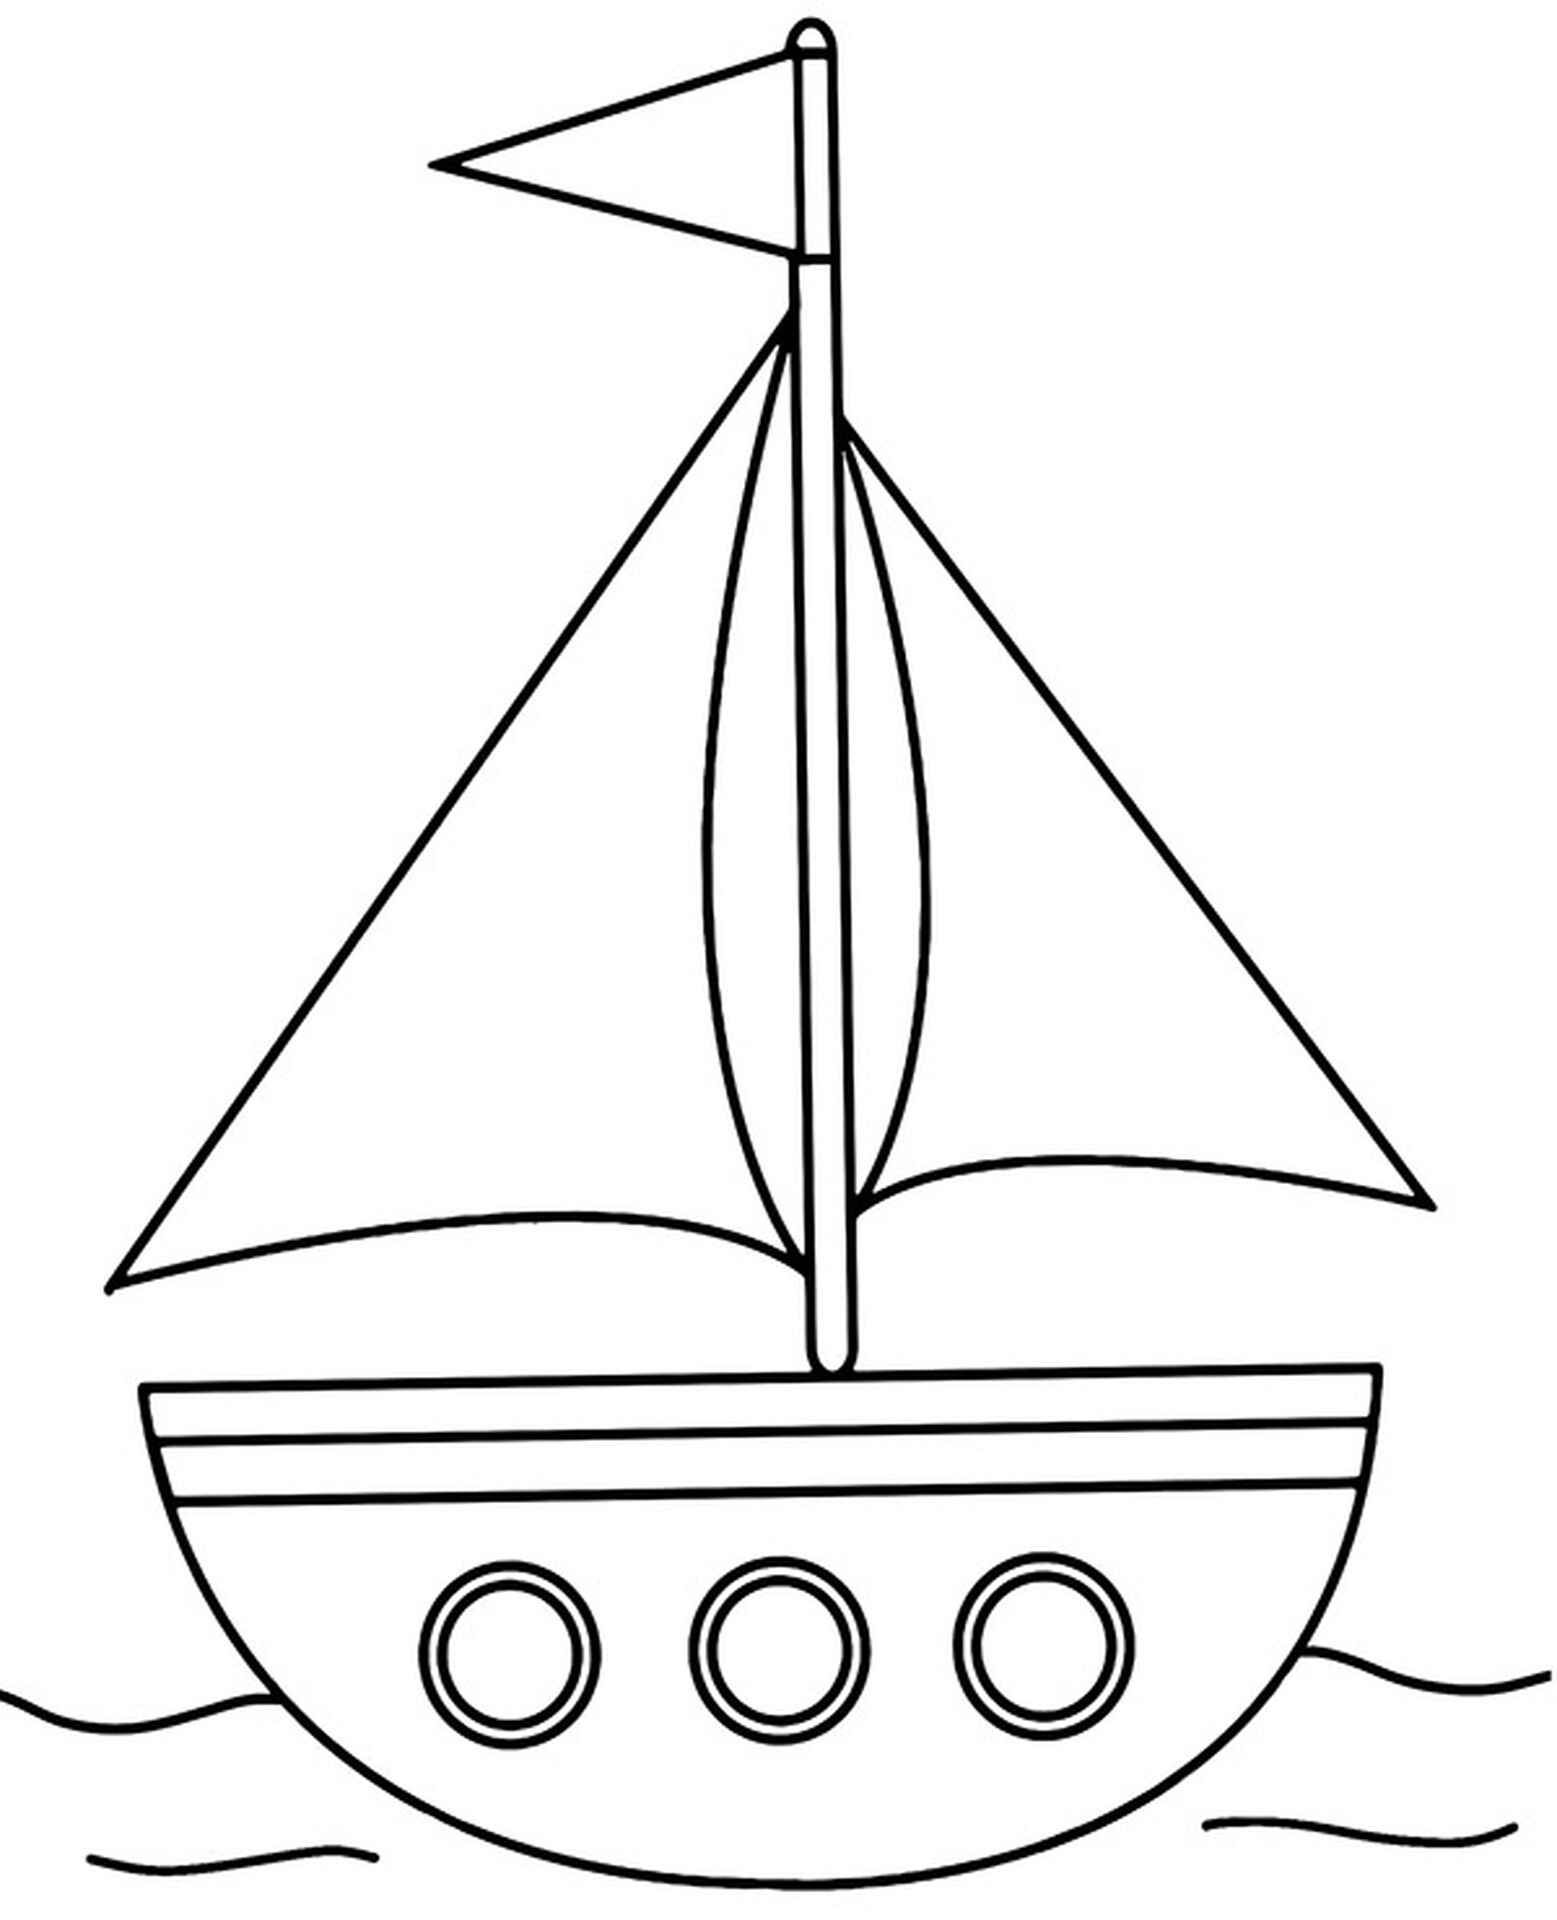 Странная раскраска лодки для детей 6-7 лет